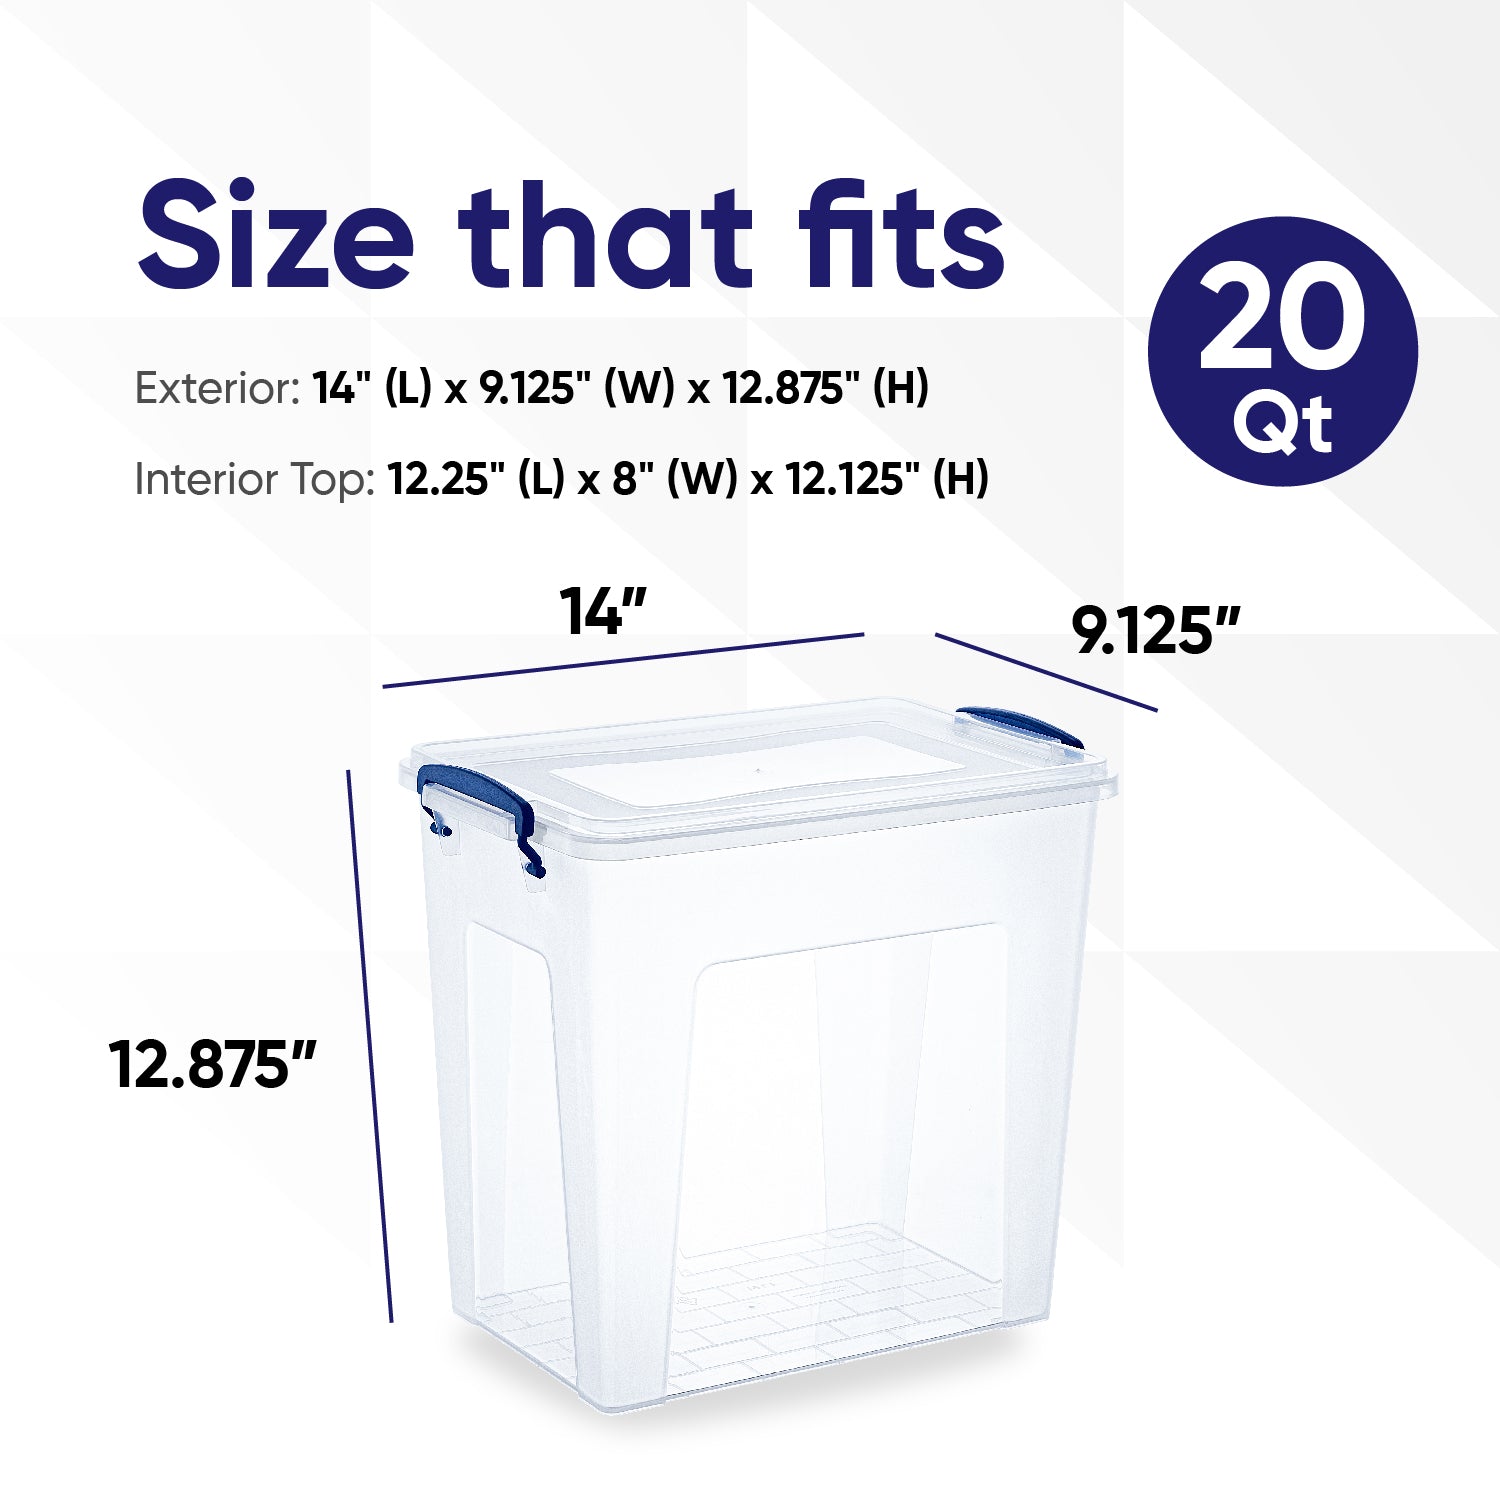 Storage Container (10 Qt.) – Superio